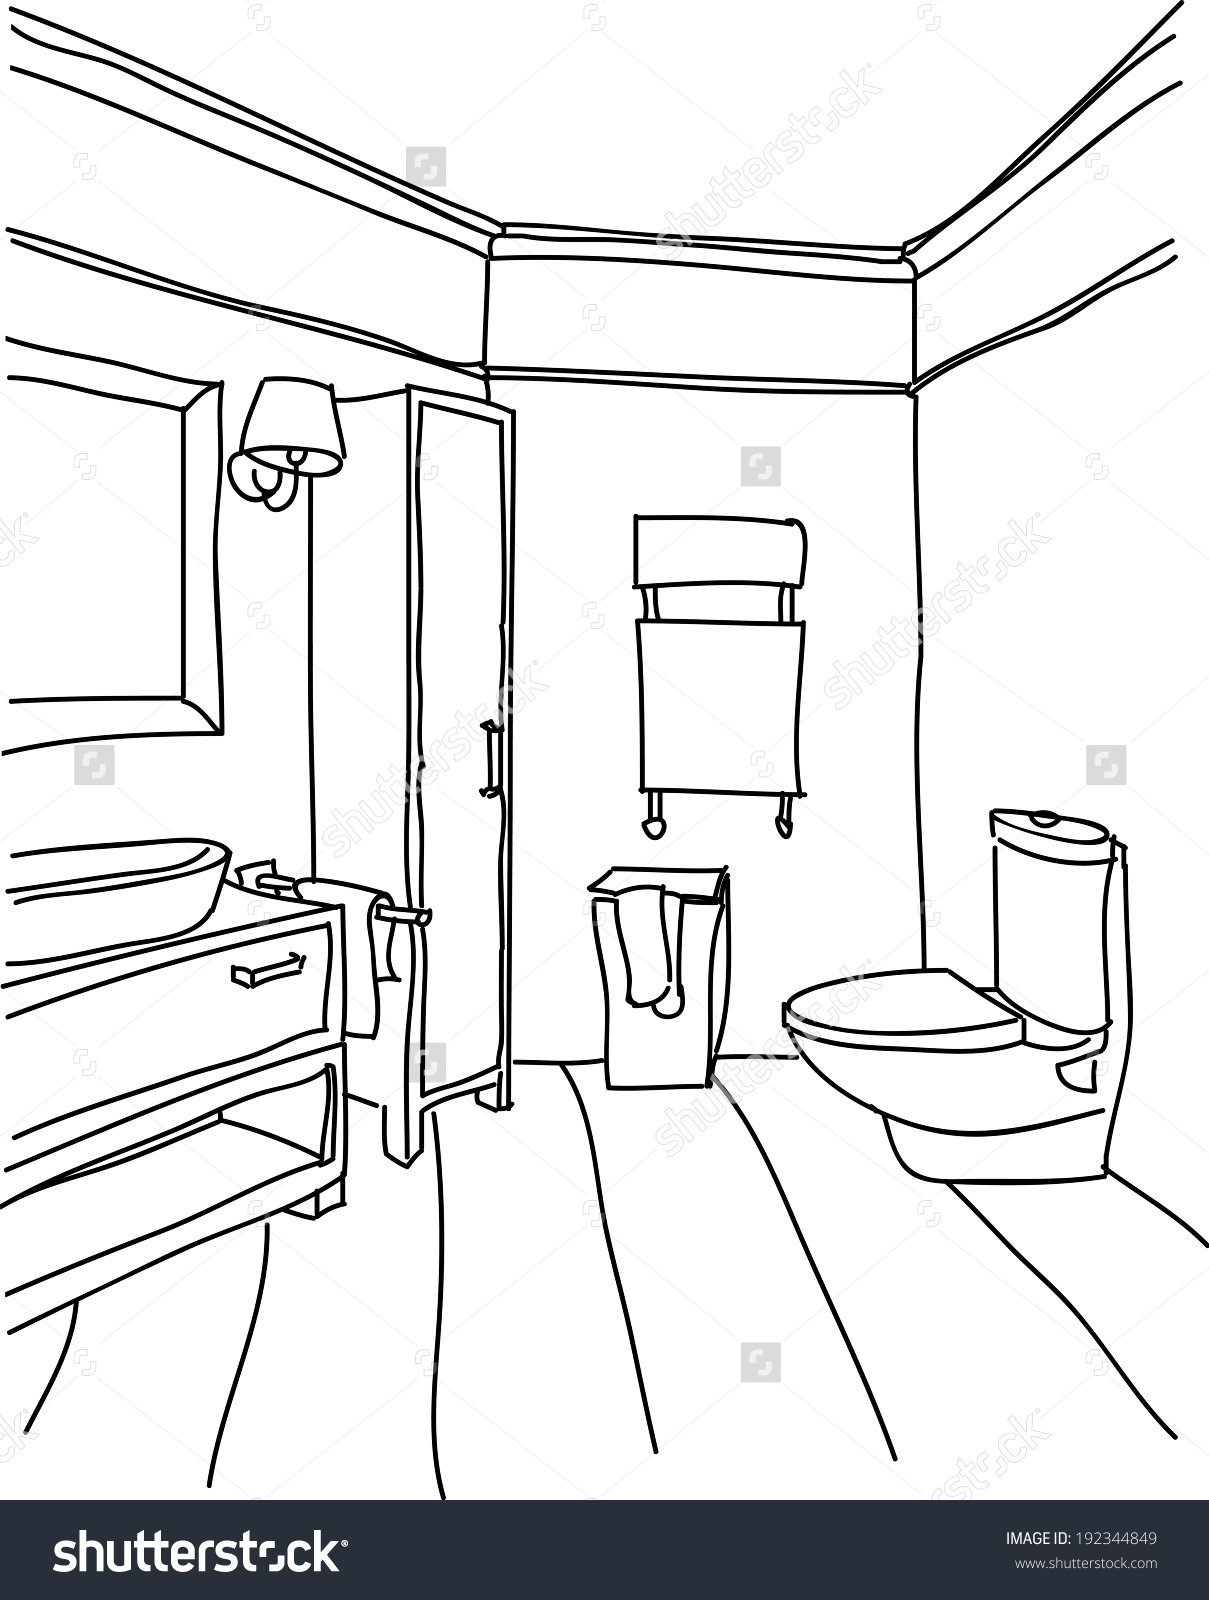 clipart bathroom outline